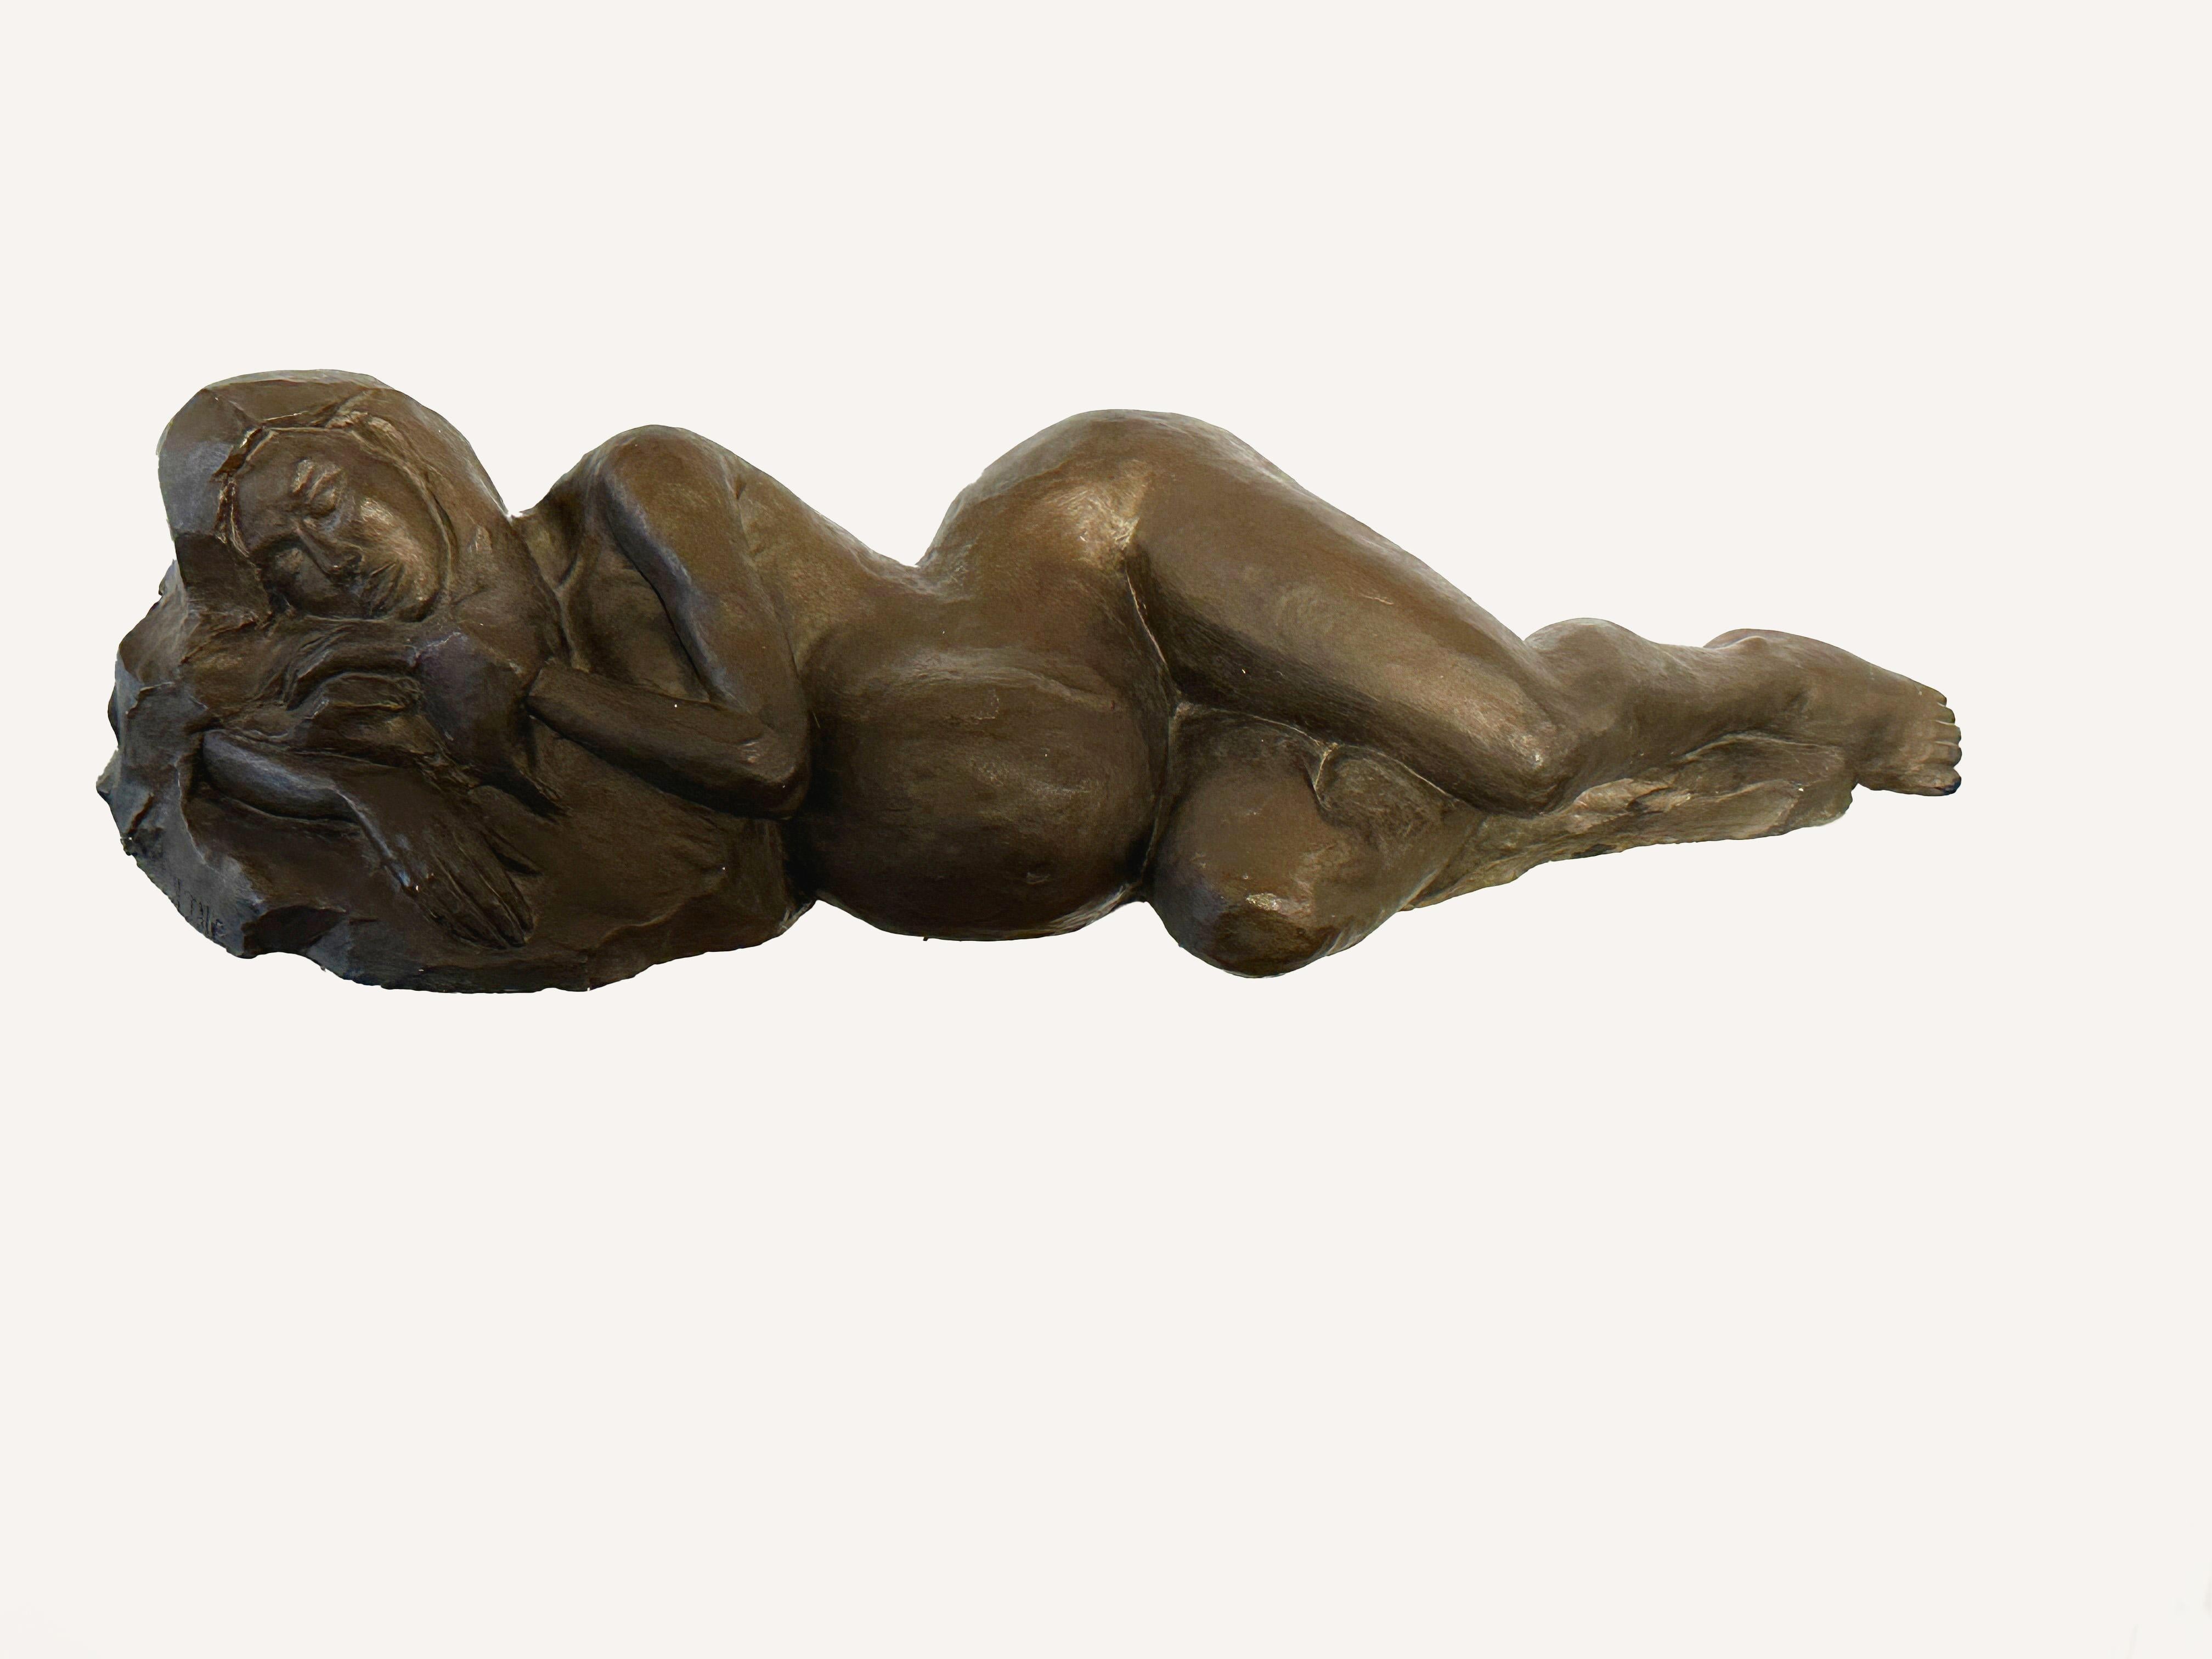 Cette sculpture de Natalie Krol est réalisée en plâtre avec une belle finition couleur bronze. Il s'agit de la fonte du bronze.
Elle montre une femme enceinte et nue qui se repose. L'expression de son visage pourrait presque suggérer que l'artiste a